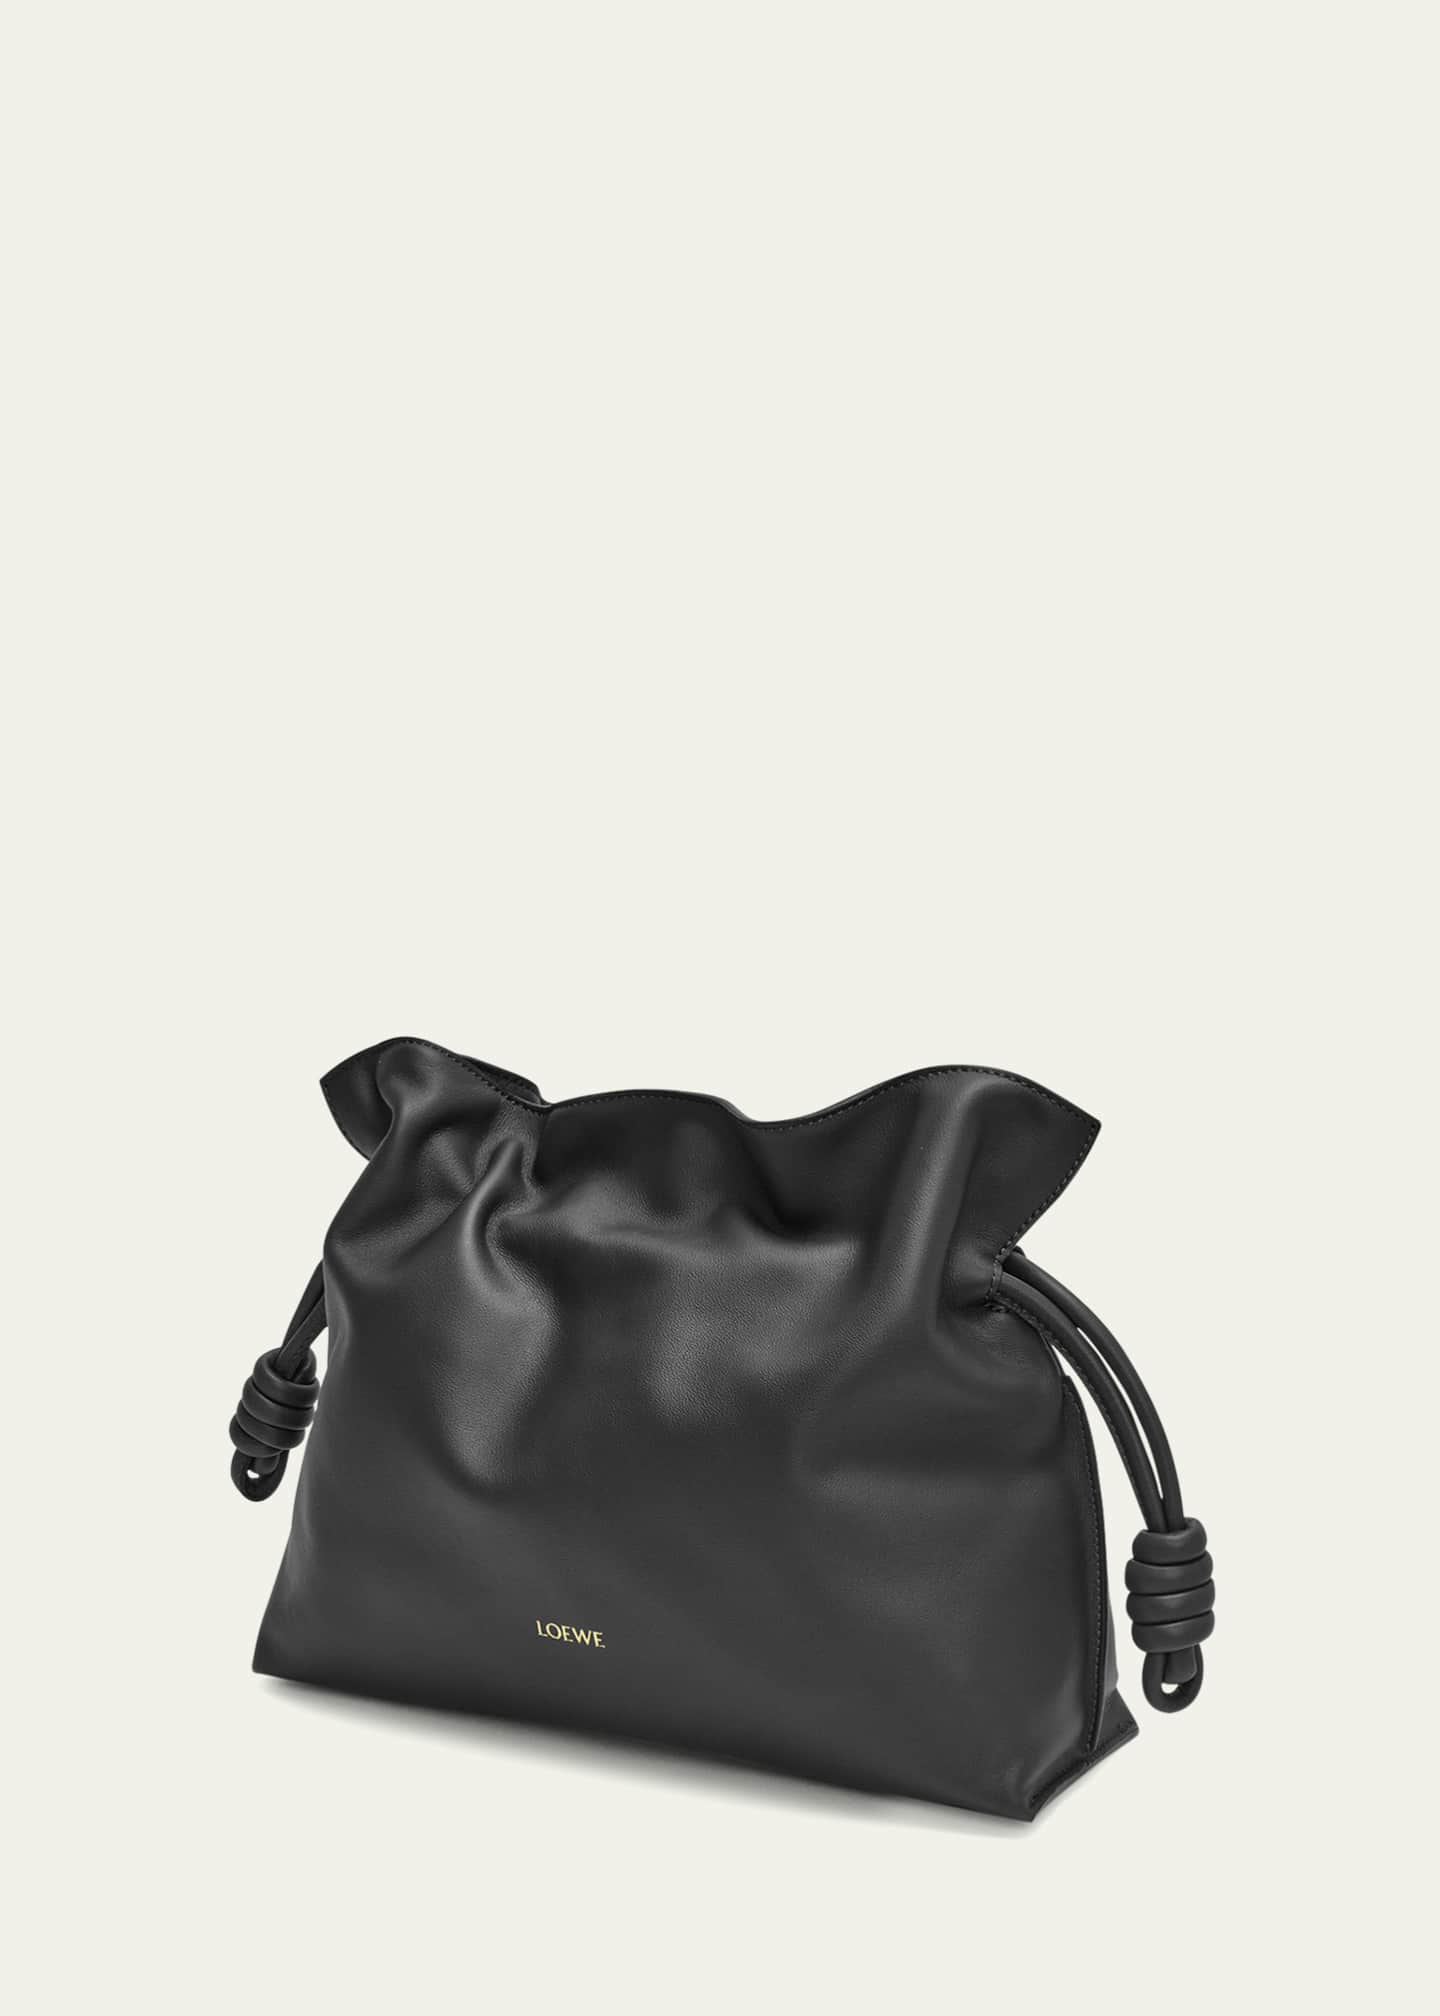 Loewe Flamenco Leather Clutch Bag - Bergdorf Goodman